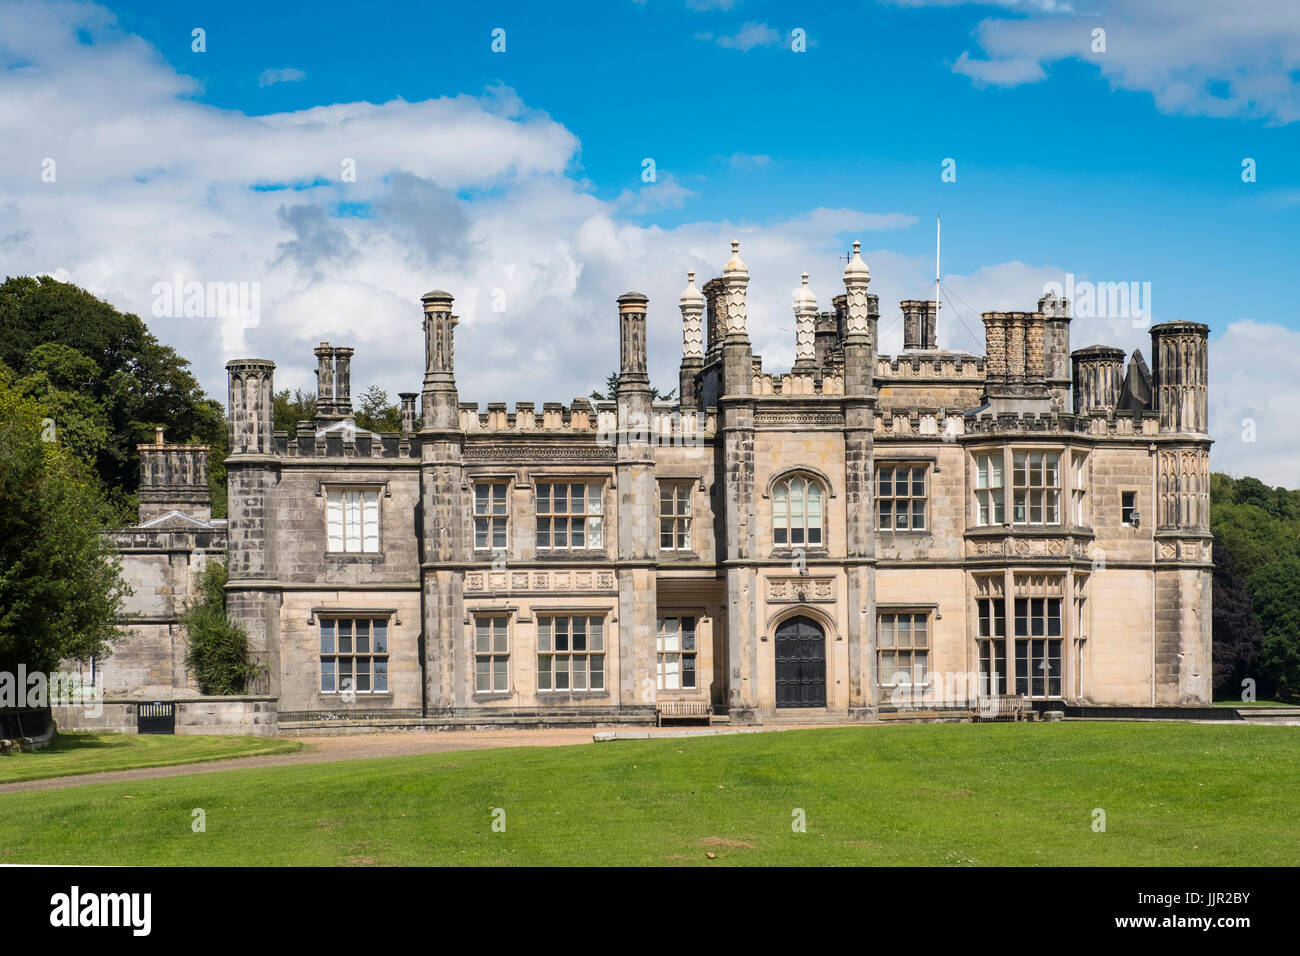 Außenansicht des Dalmeny House Herrenhaus außerhalb Edinburgh in Schottland, Vereinigtes Königreich Stockfoto